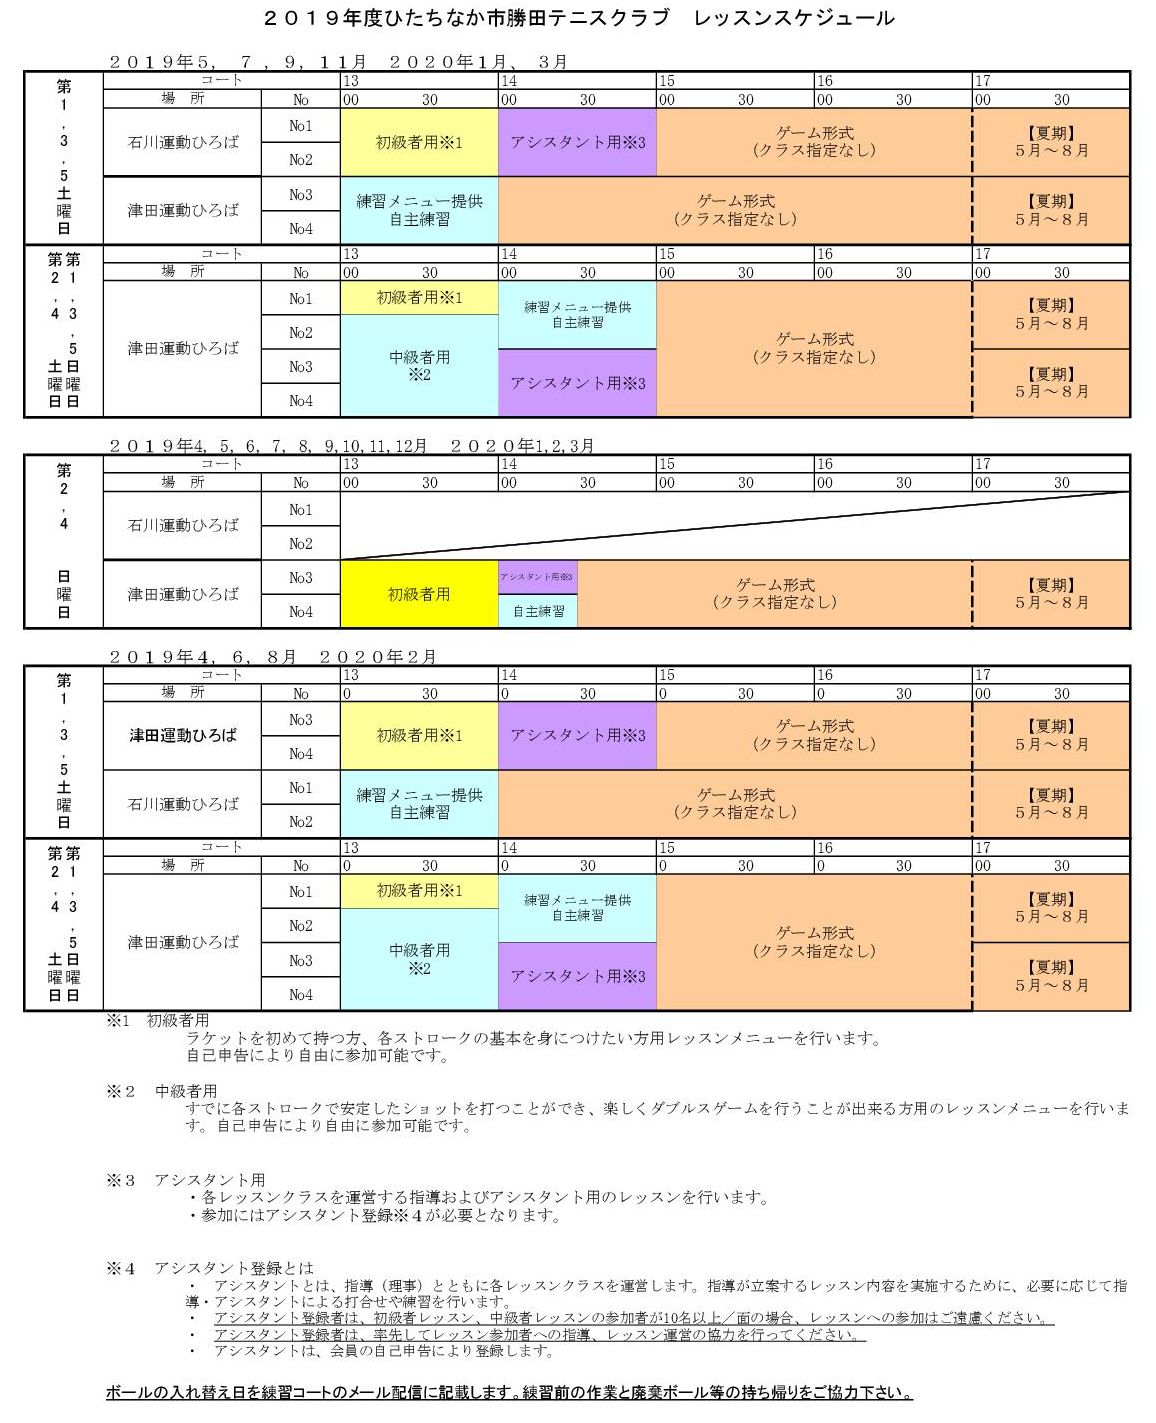 2015_Schedule